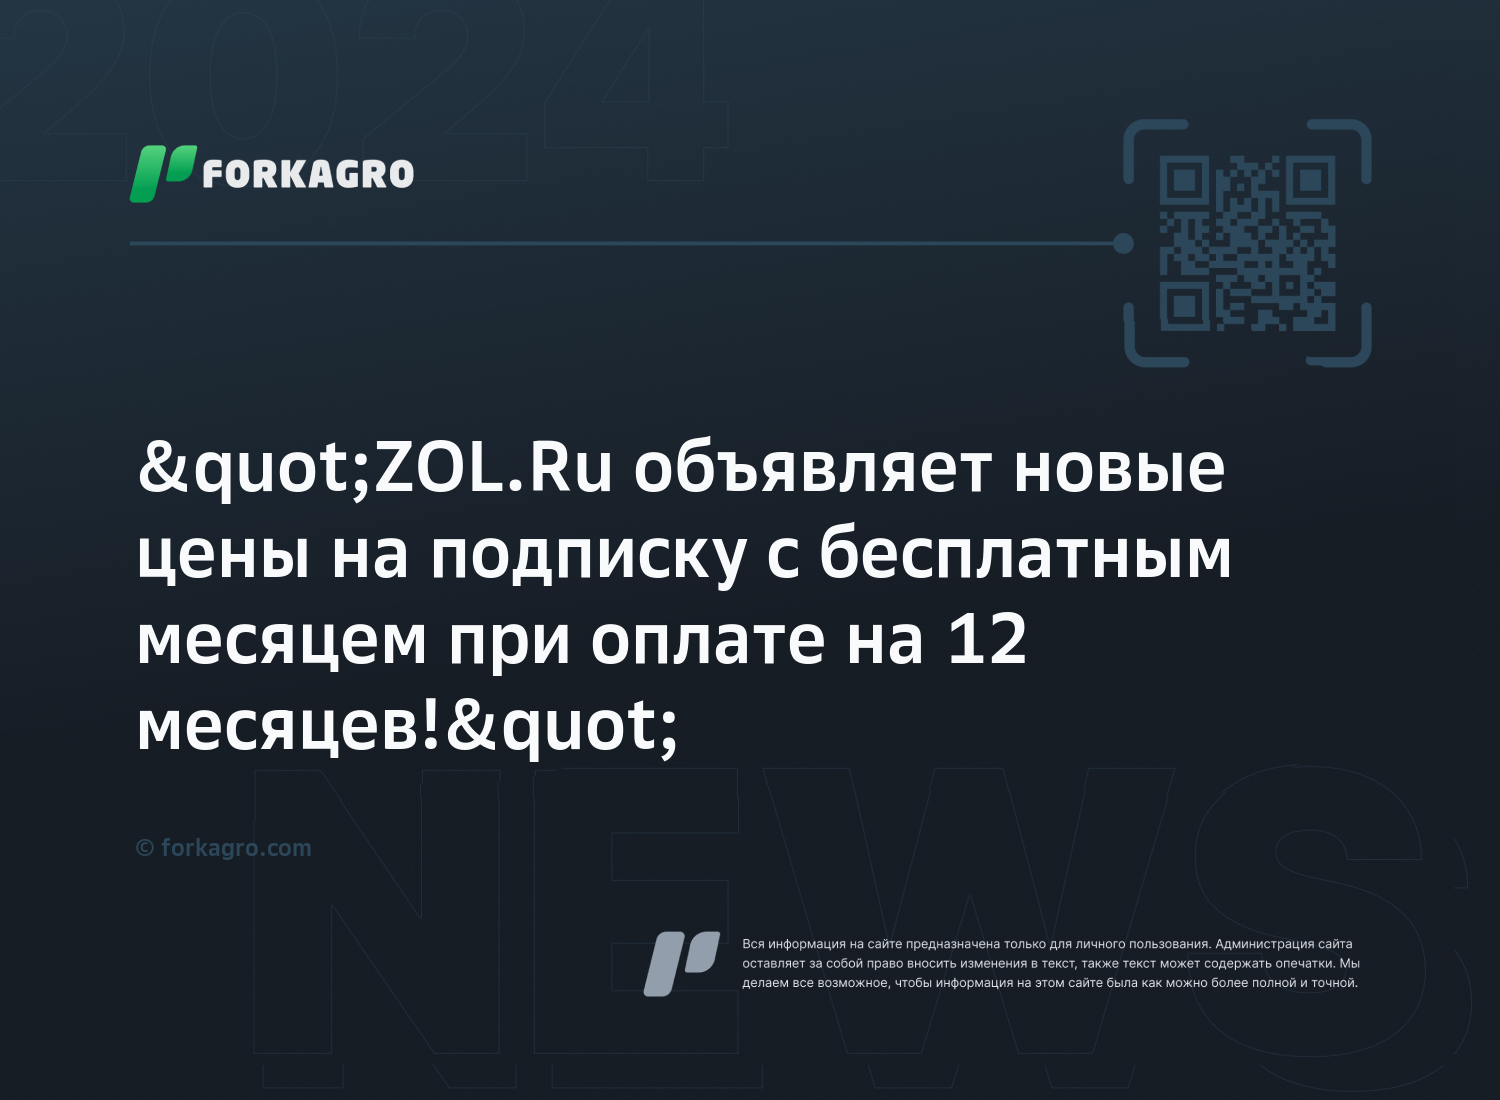 "ZOL.Ru объявляет новые цены на подписку с бесплатным месяцем при оплате на 12 месяцев!"